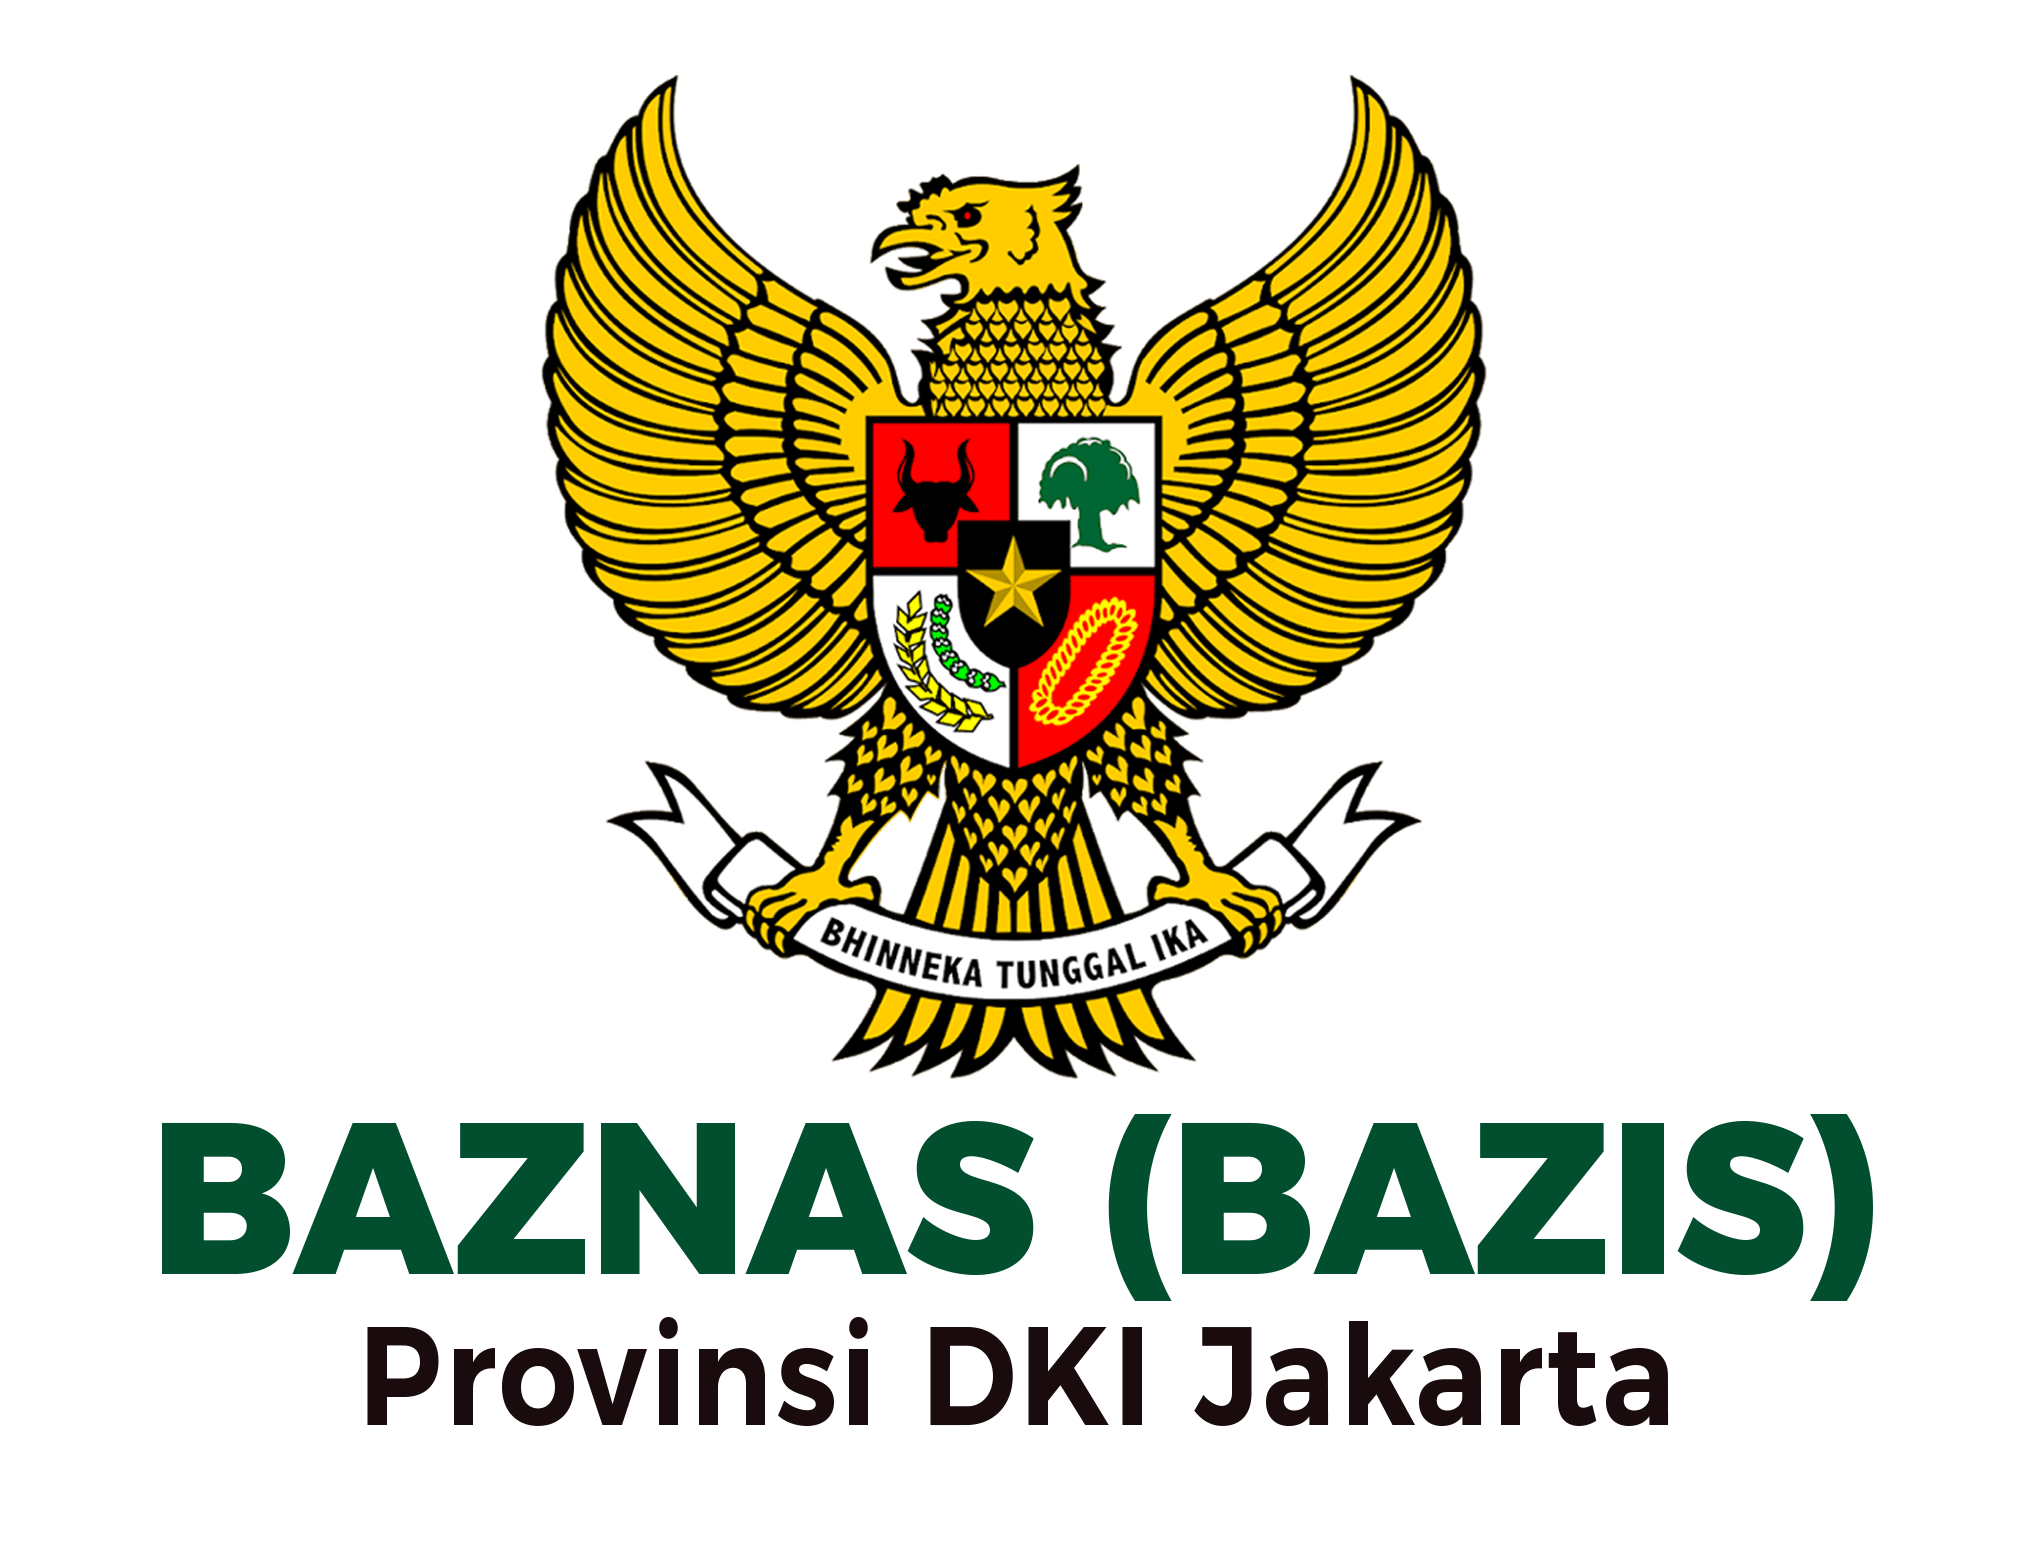 Logo Baznas Bazis DKI Jakarta